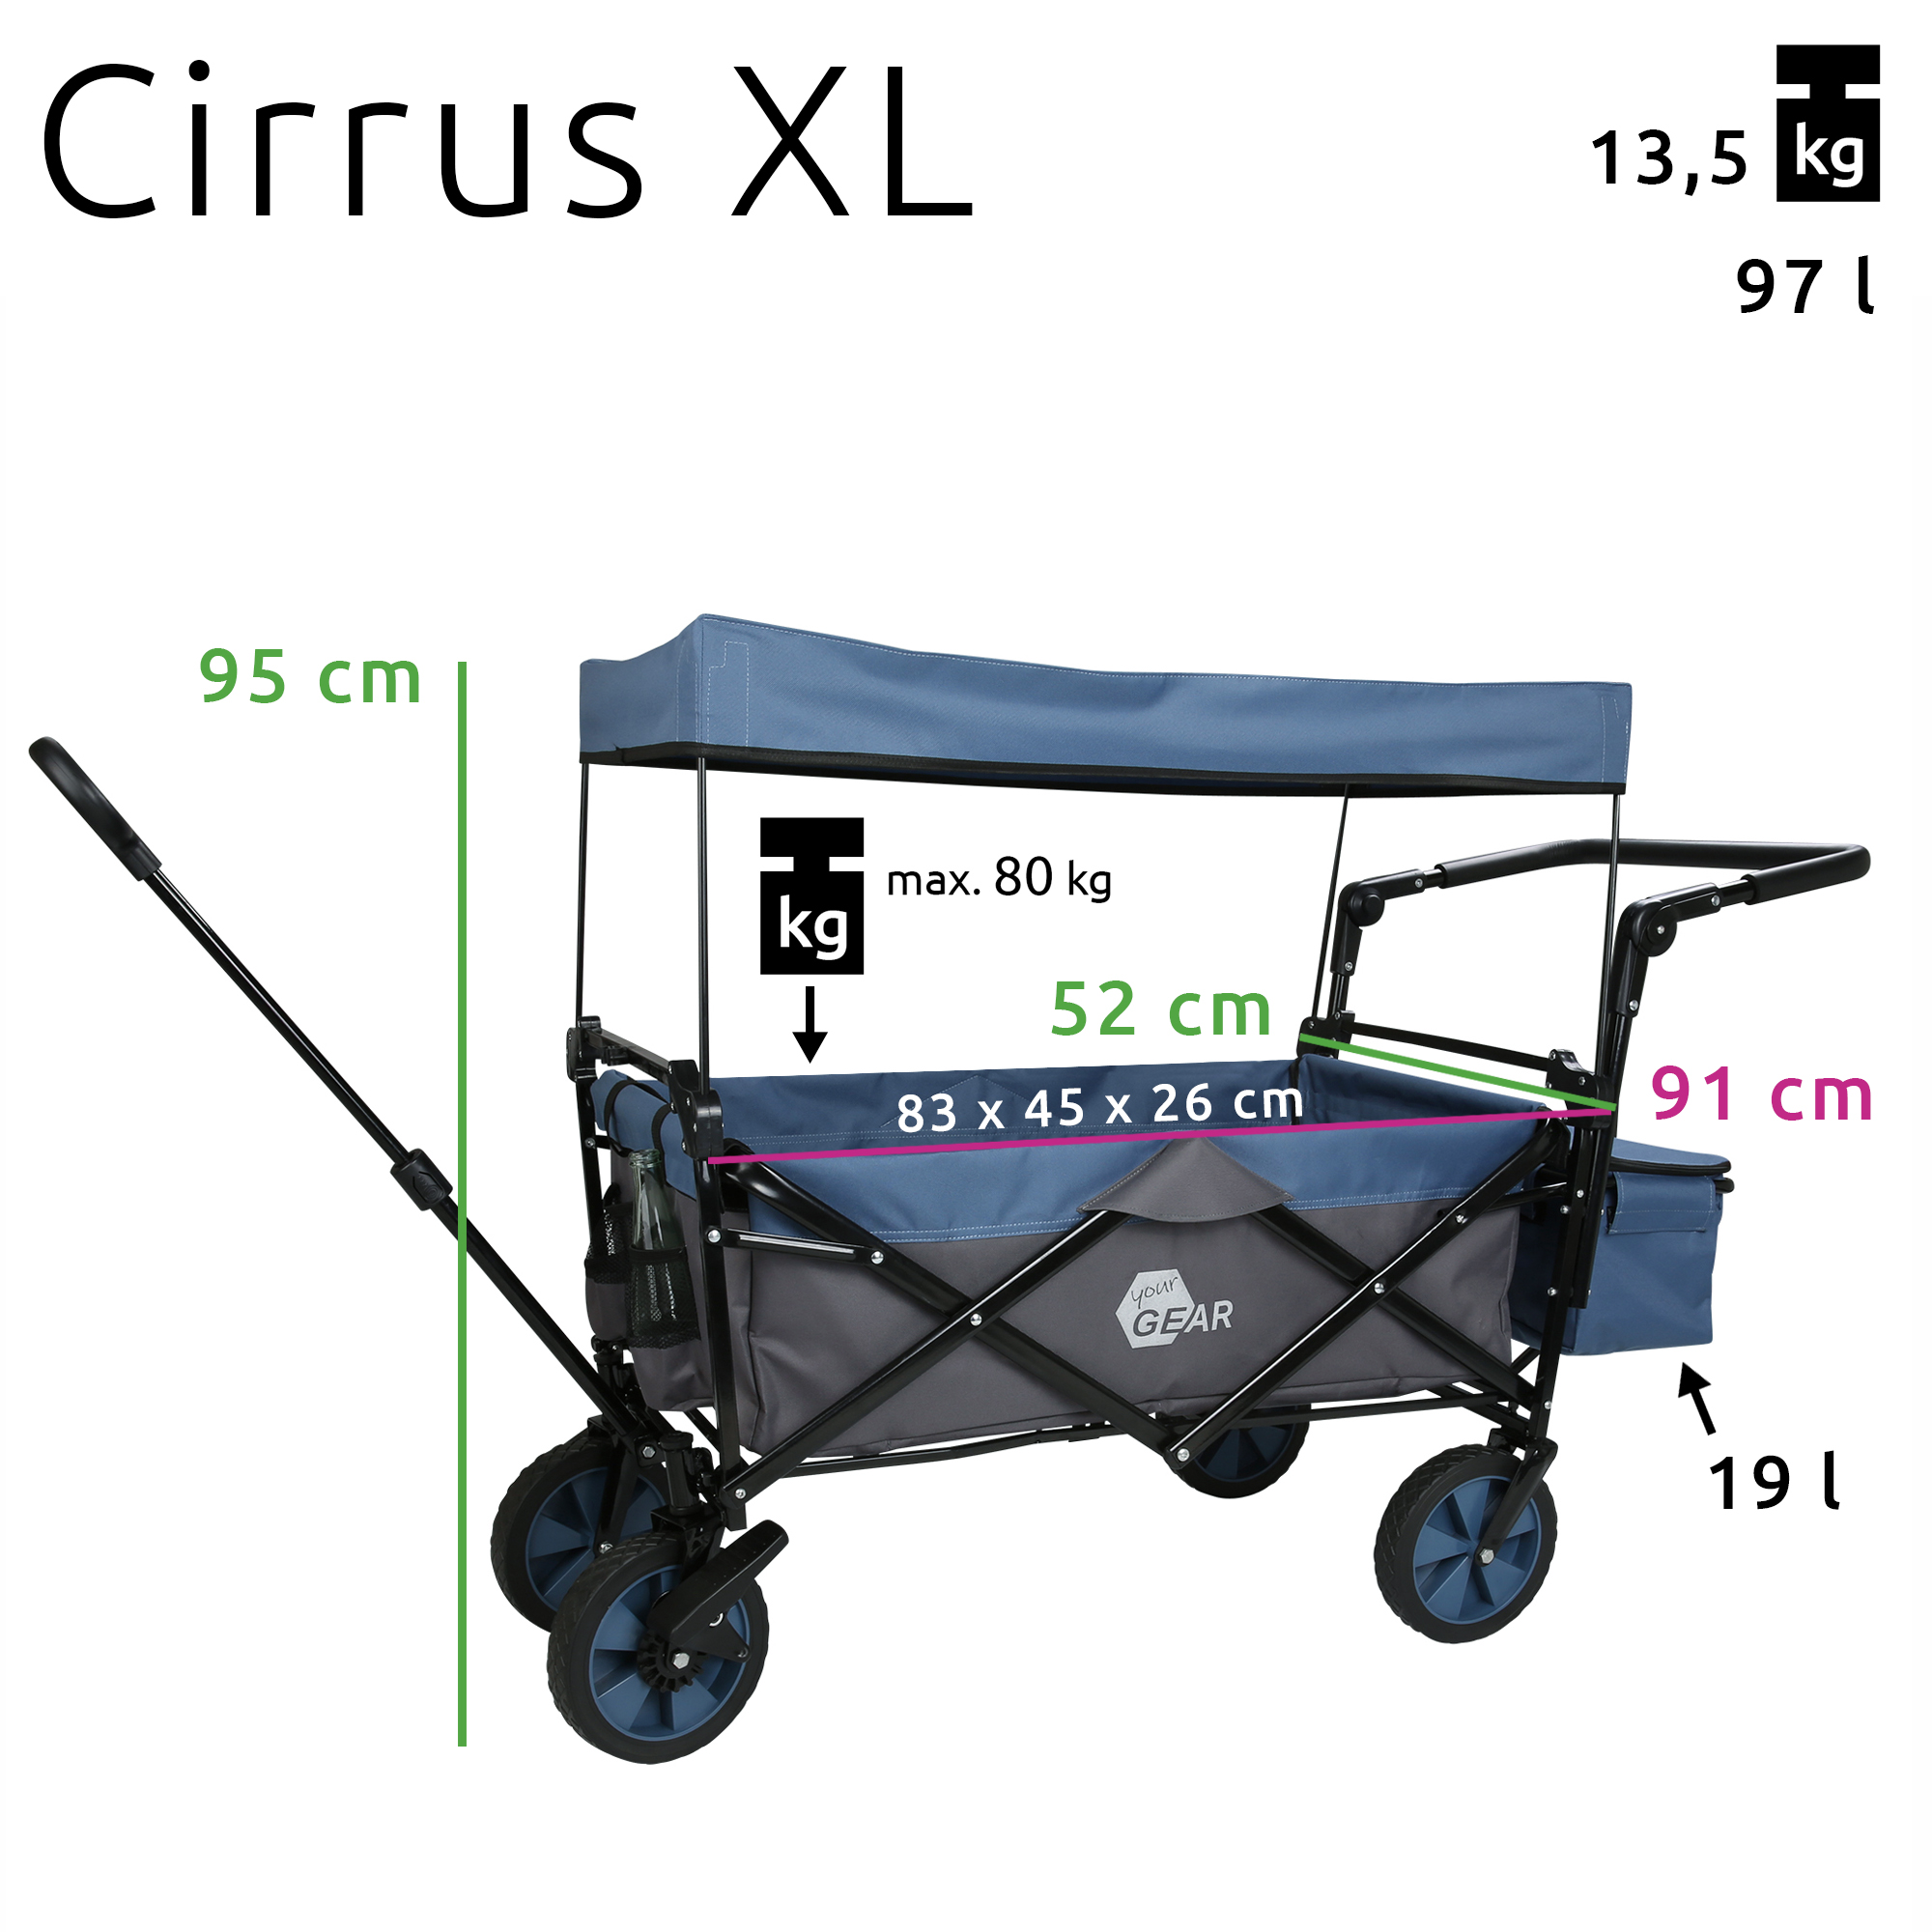 your GEAR Trolley Cirrus XL carro plegable empujar y tirar techo frenos  bolsa nevera máx 80 kg